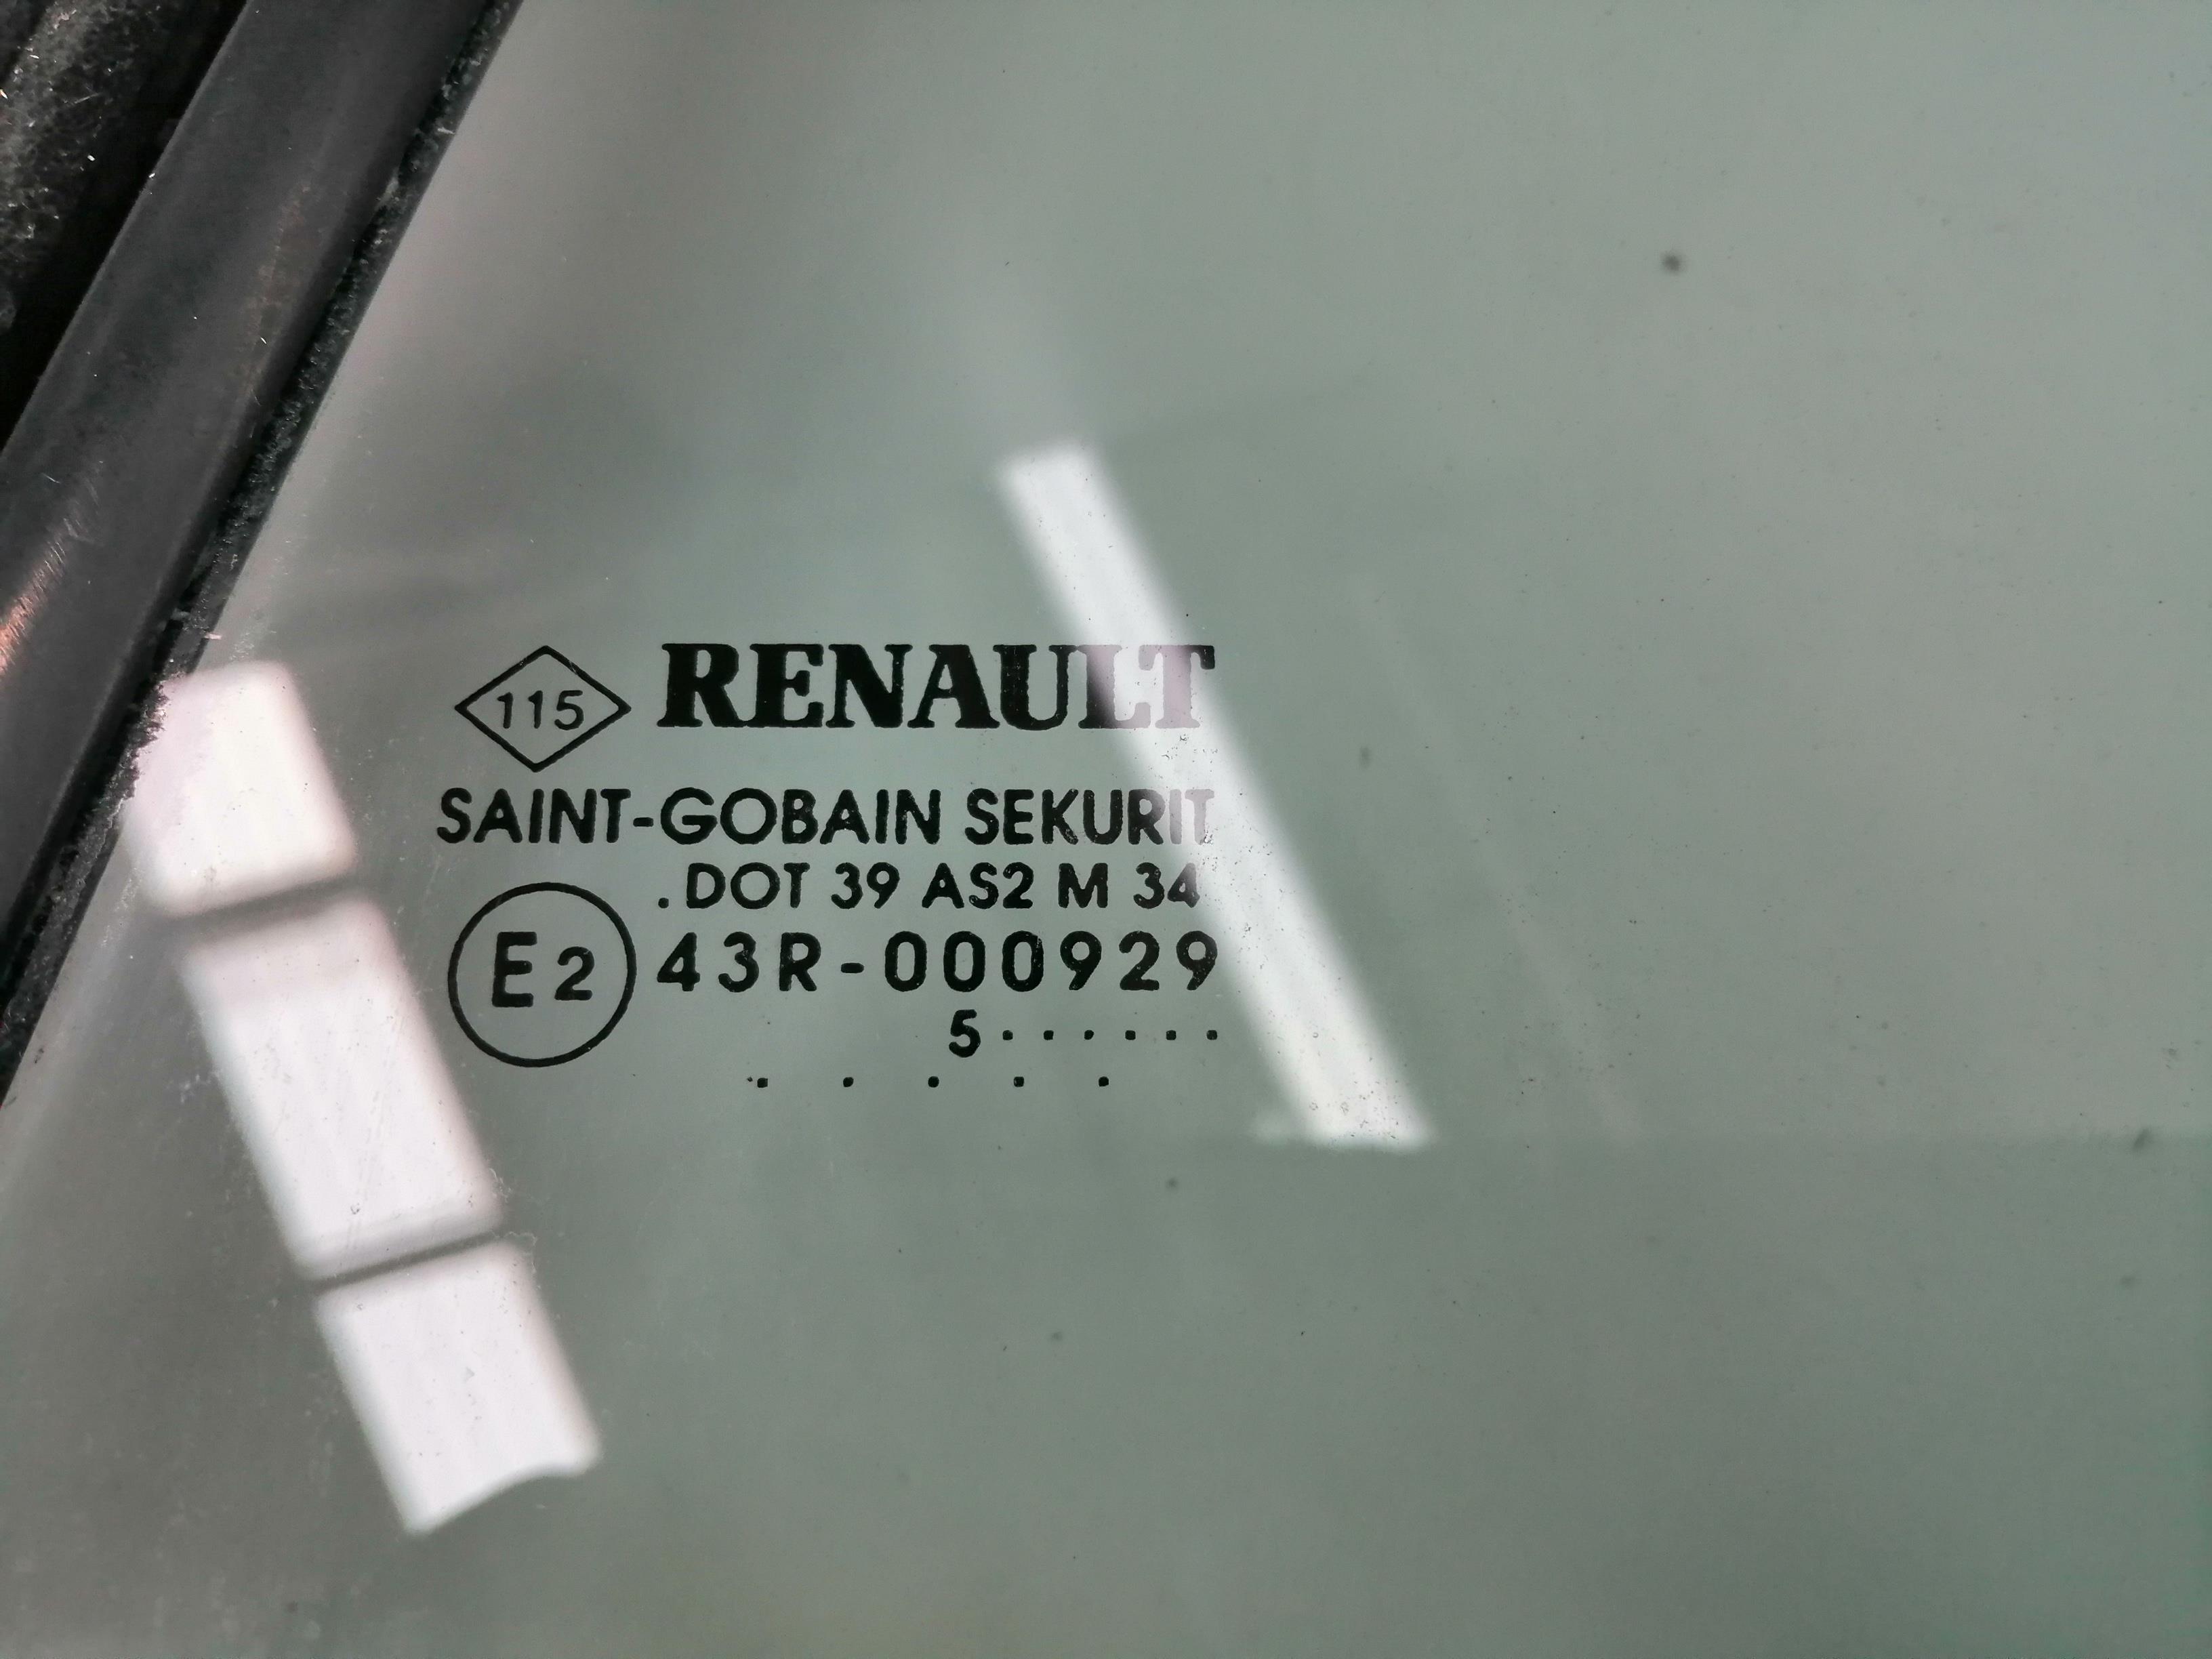 RENAULT Megane 3 generation (2008-2020) Aizmugurējais kreisais durvju stikls 43R000929 23985575